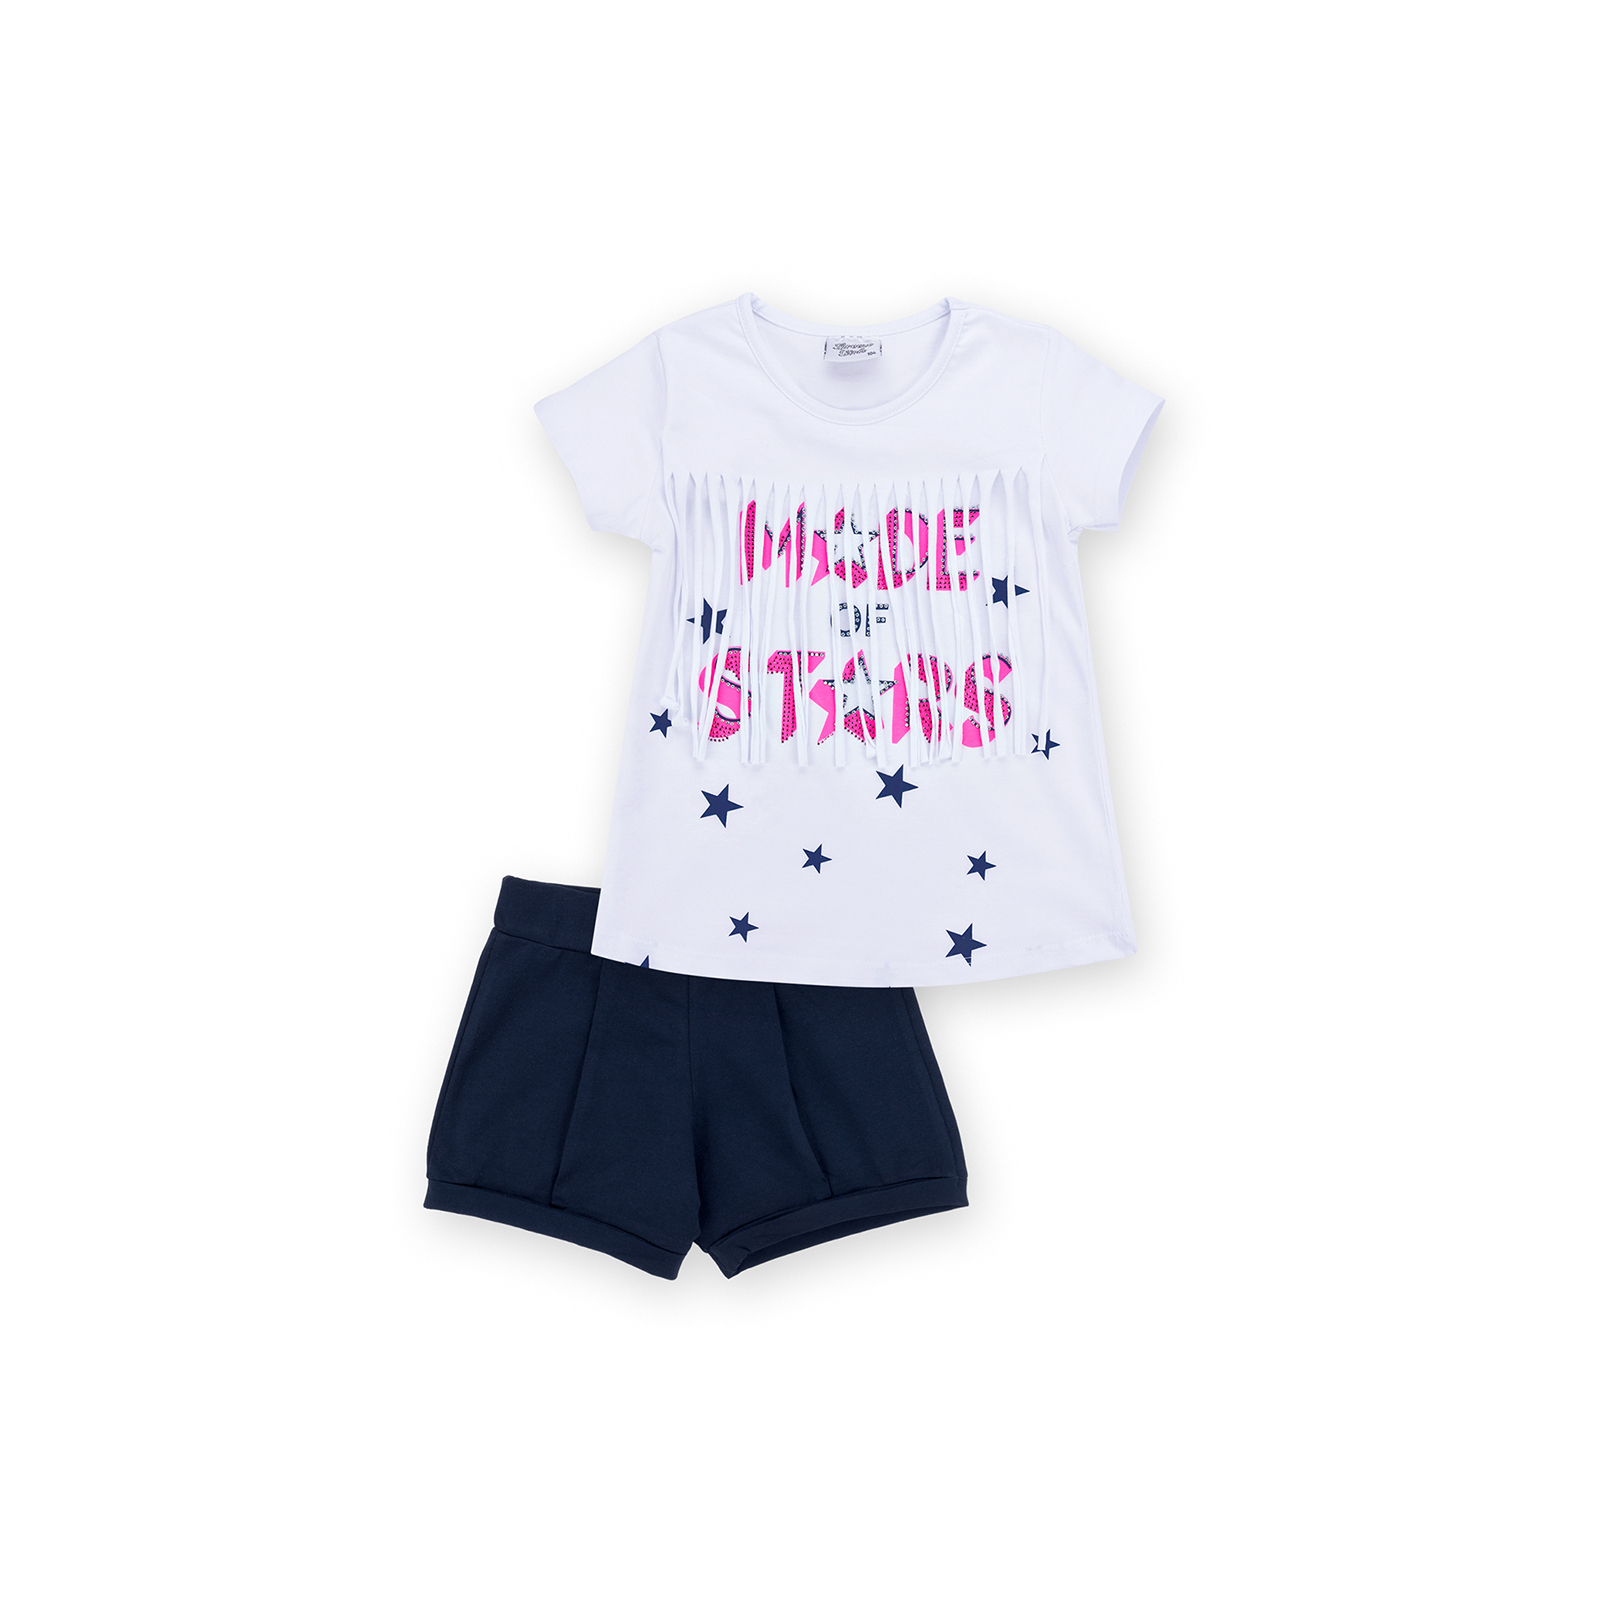 Набір дитячого одягу Breeze футболка із зірочками з шортами (9036-122G-pink)